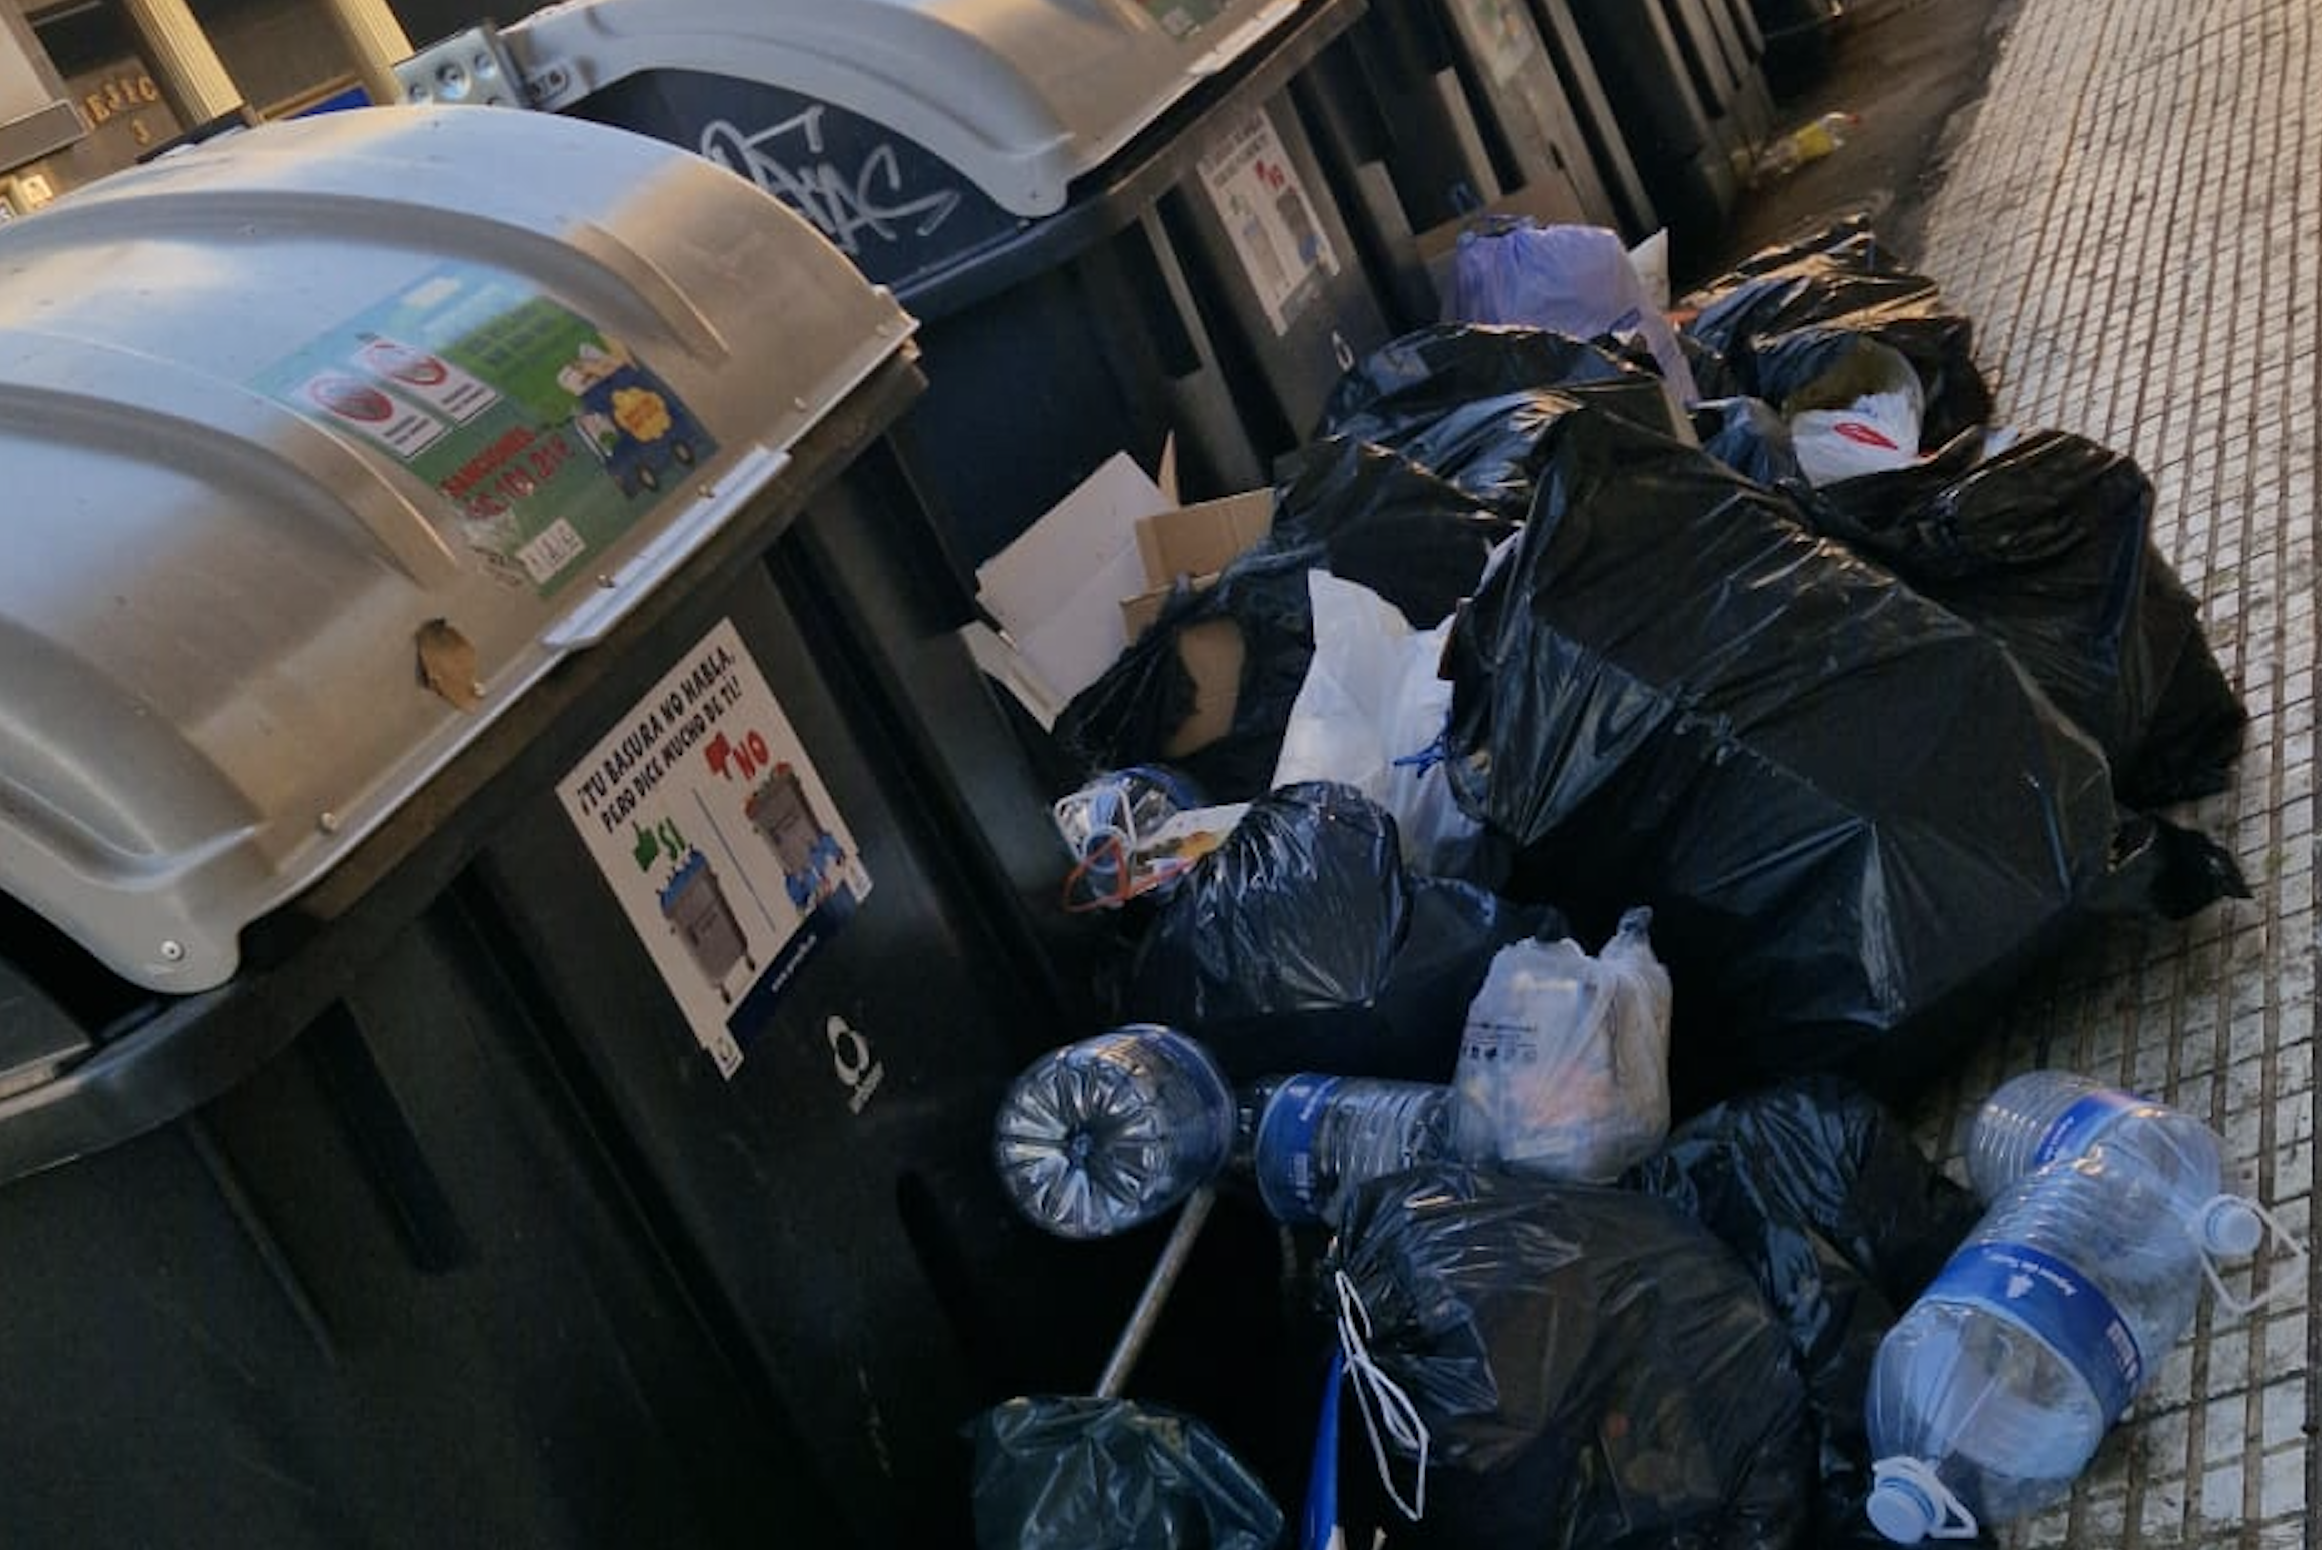 Denuncian el "incivismo" de algunos ciudadanos de Arrecife al tirar la basura fuera de los contenedores